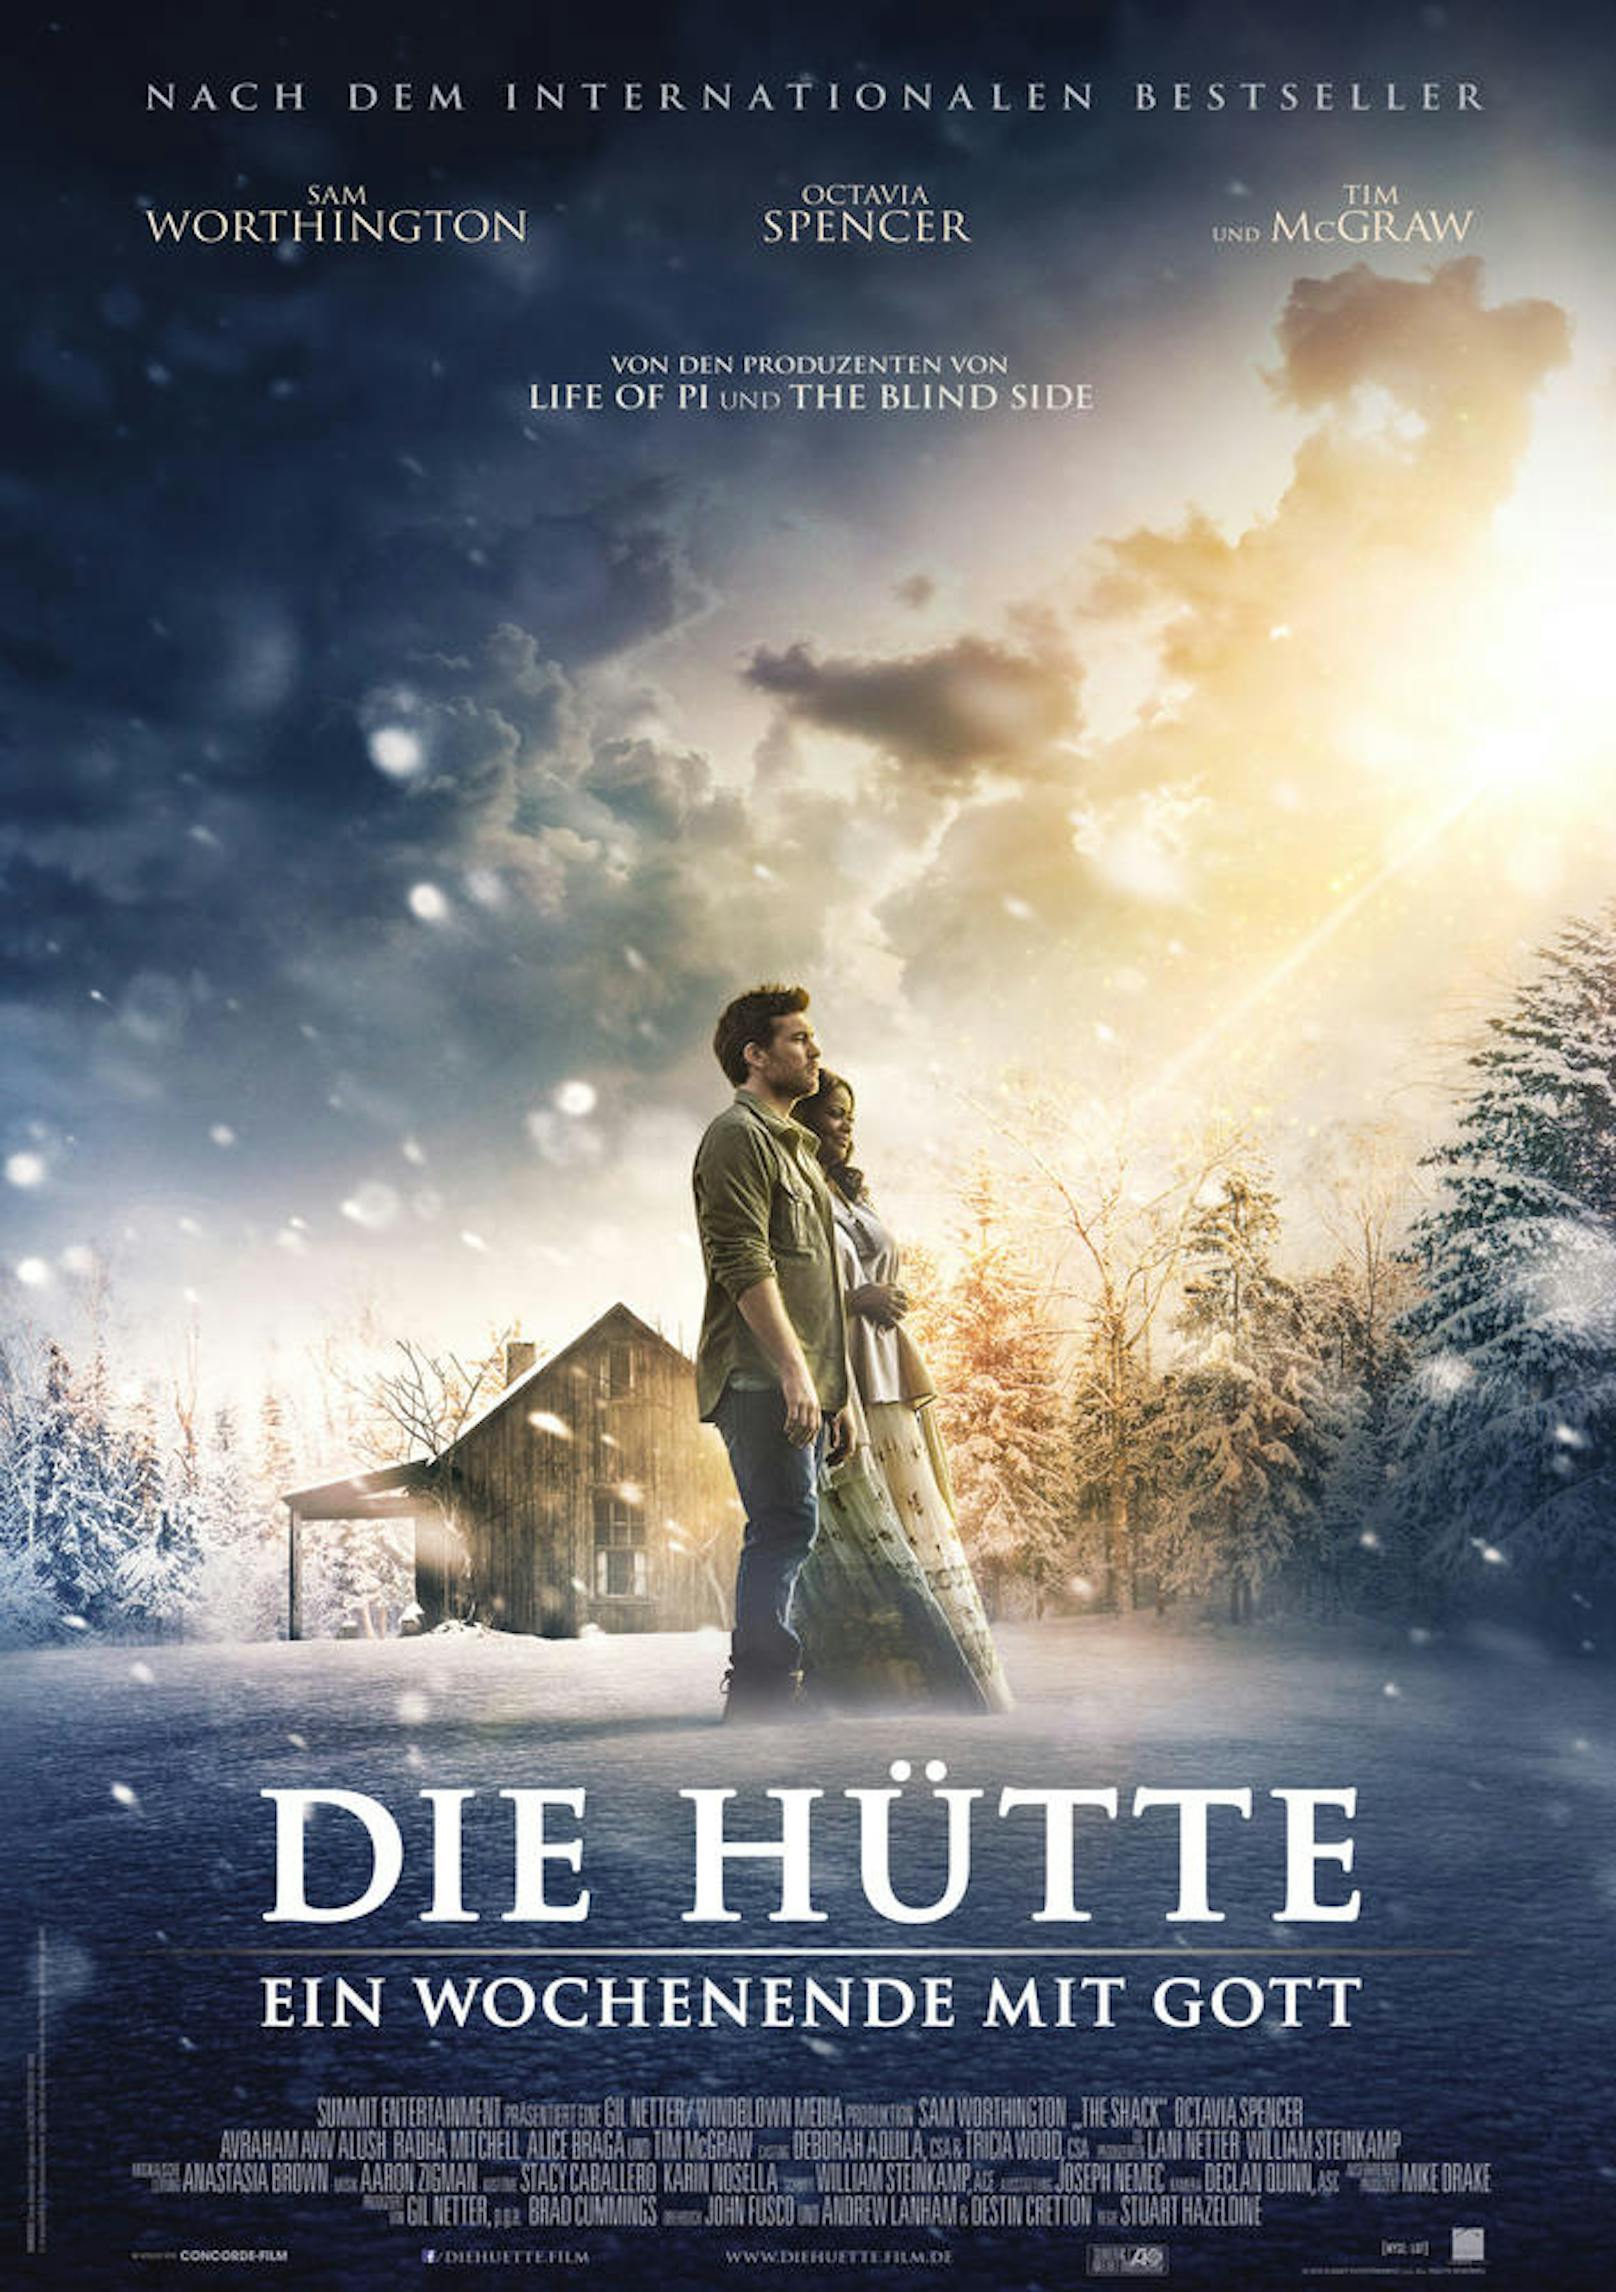 Das offizielle Filmplakat von "Die Hütte"